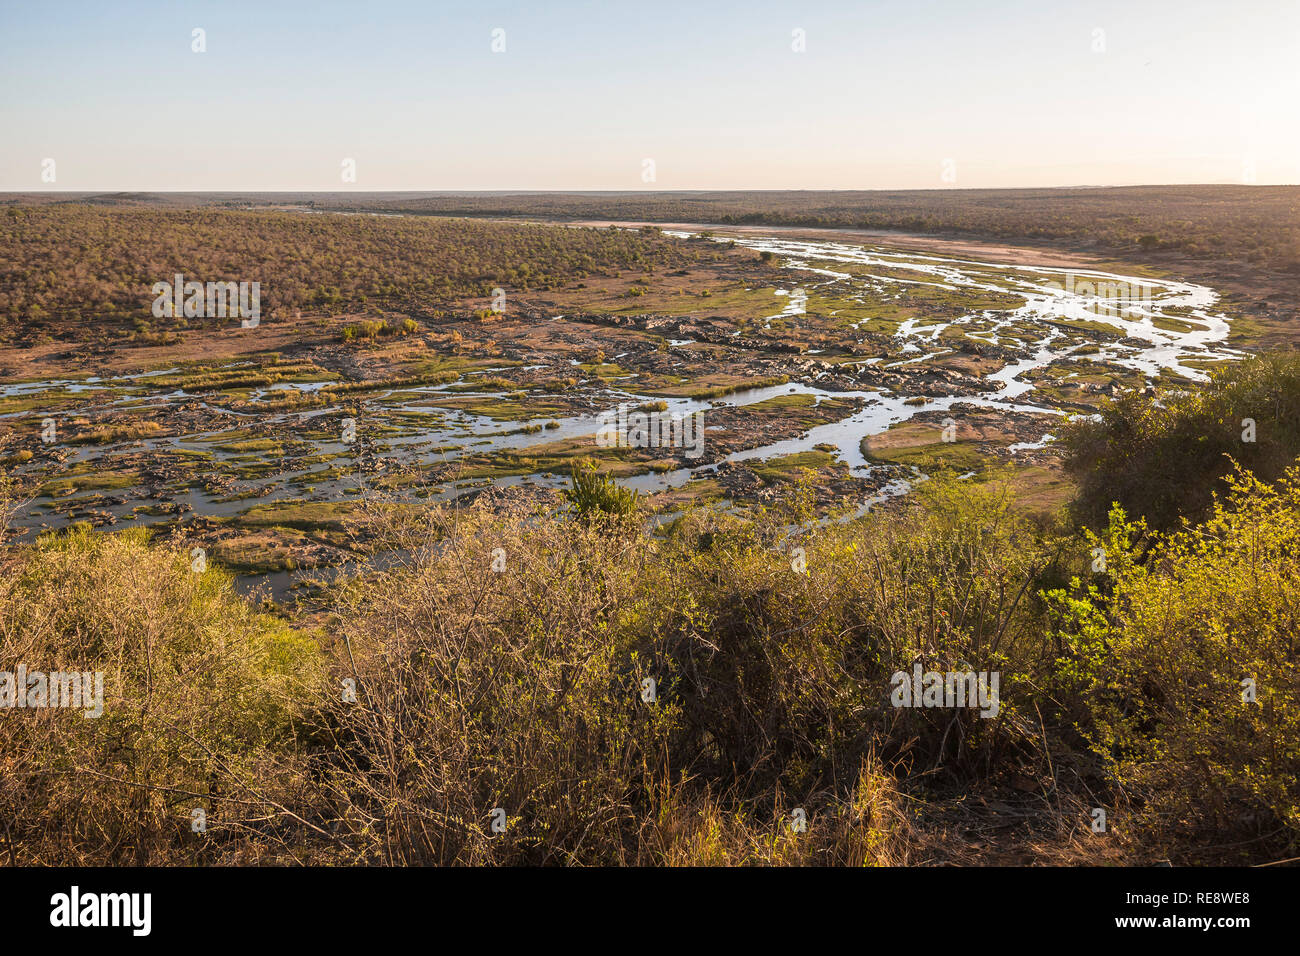 Ampia vista sul fiume Olifants dal punto di vista di Camp, Africa Foto Stock